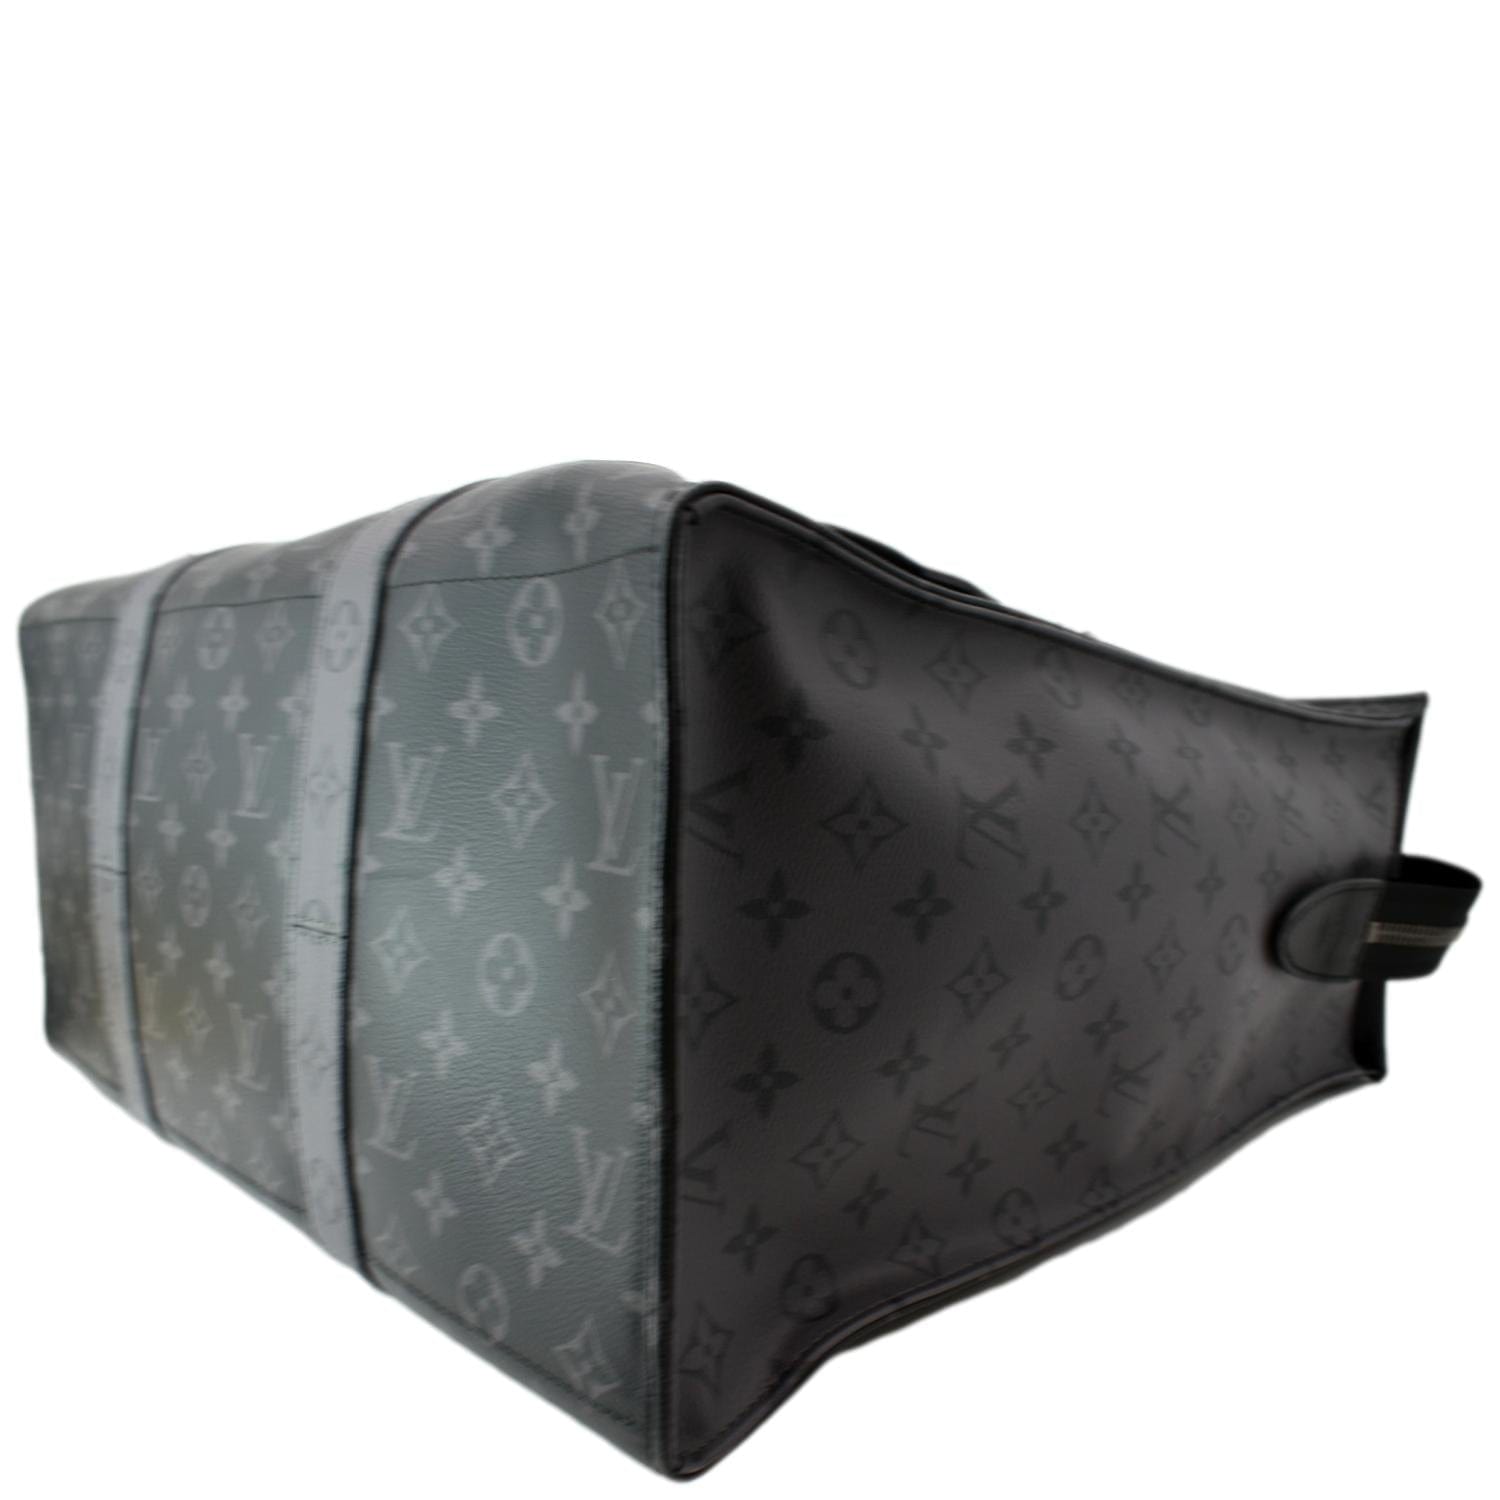 Louis Vuitton | Multiple Wallet Split Monogram | M63025